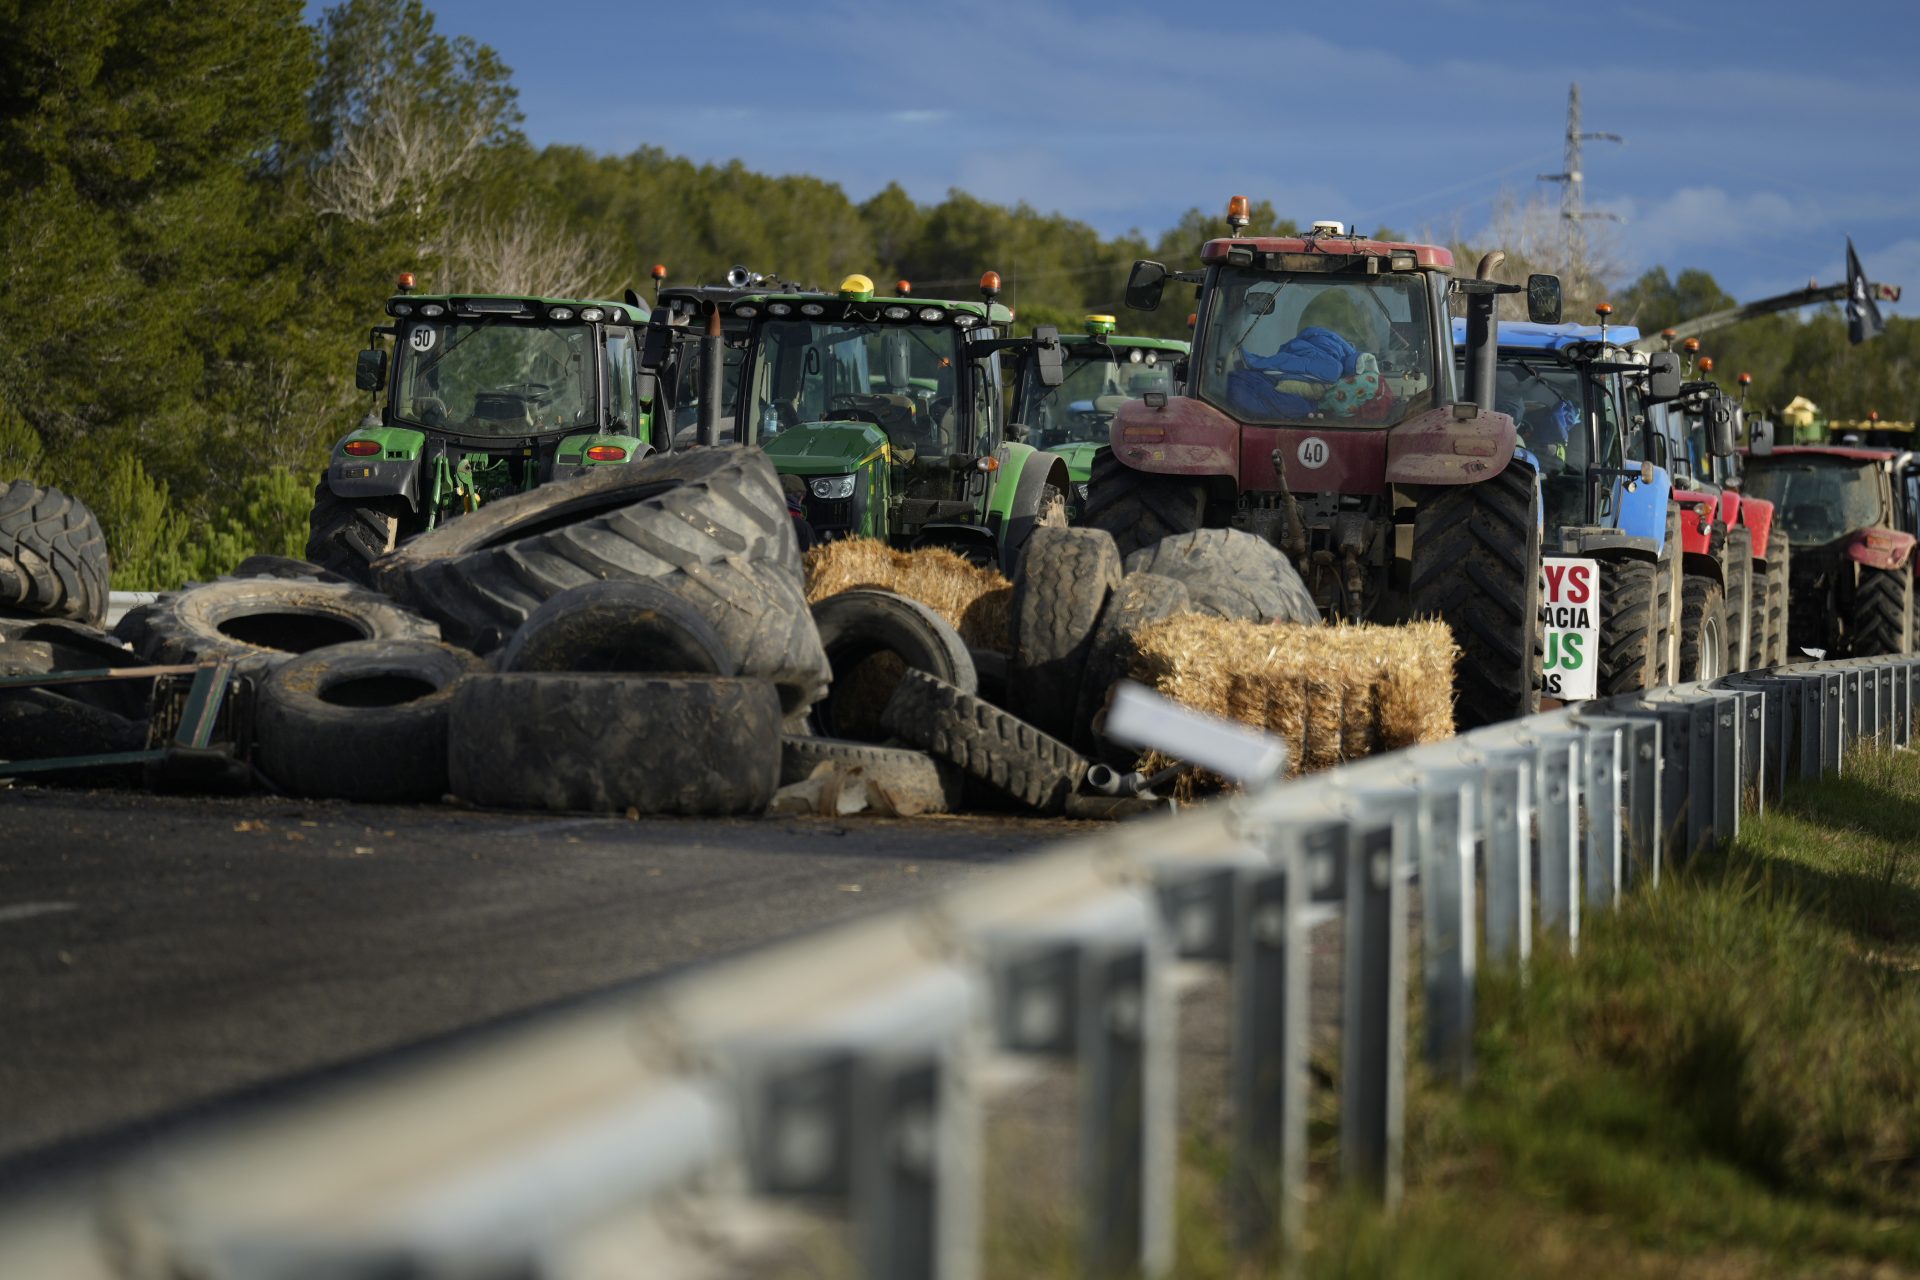 Bloqueo de la principal vía de conexión por carretera entre España y Francia, la autopista AP-7, en una protesta de agricultores. Efeagsro/David Borrat